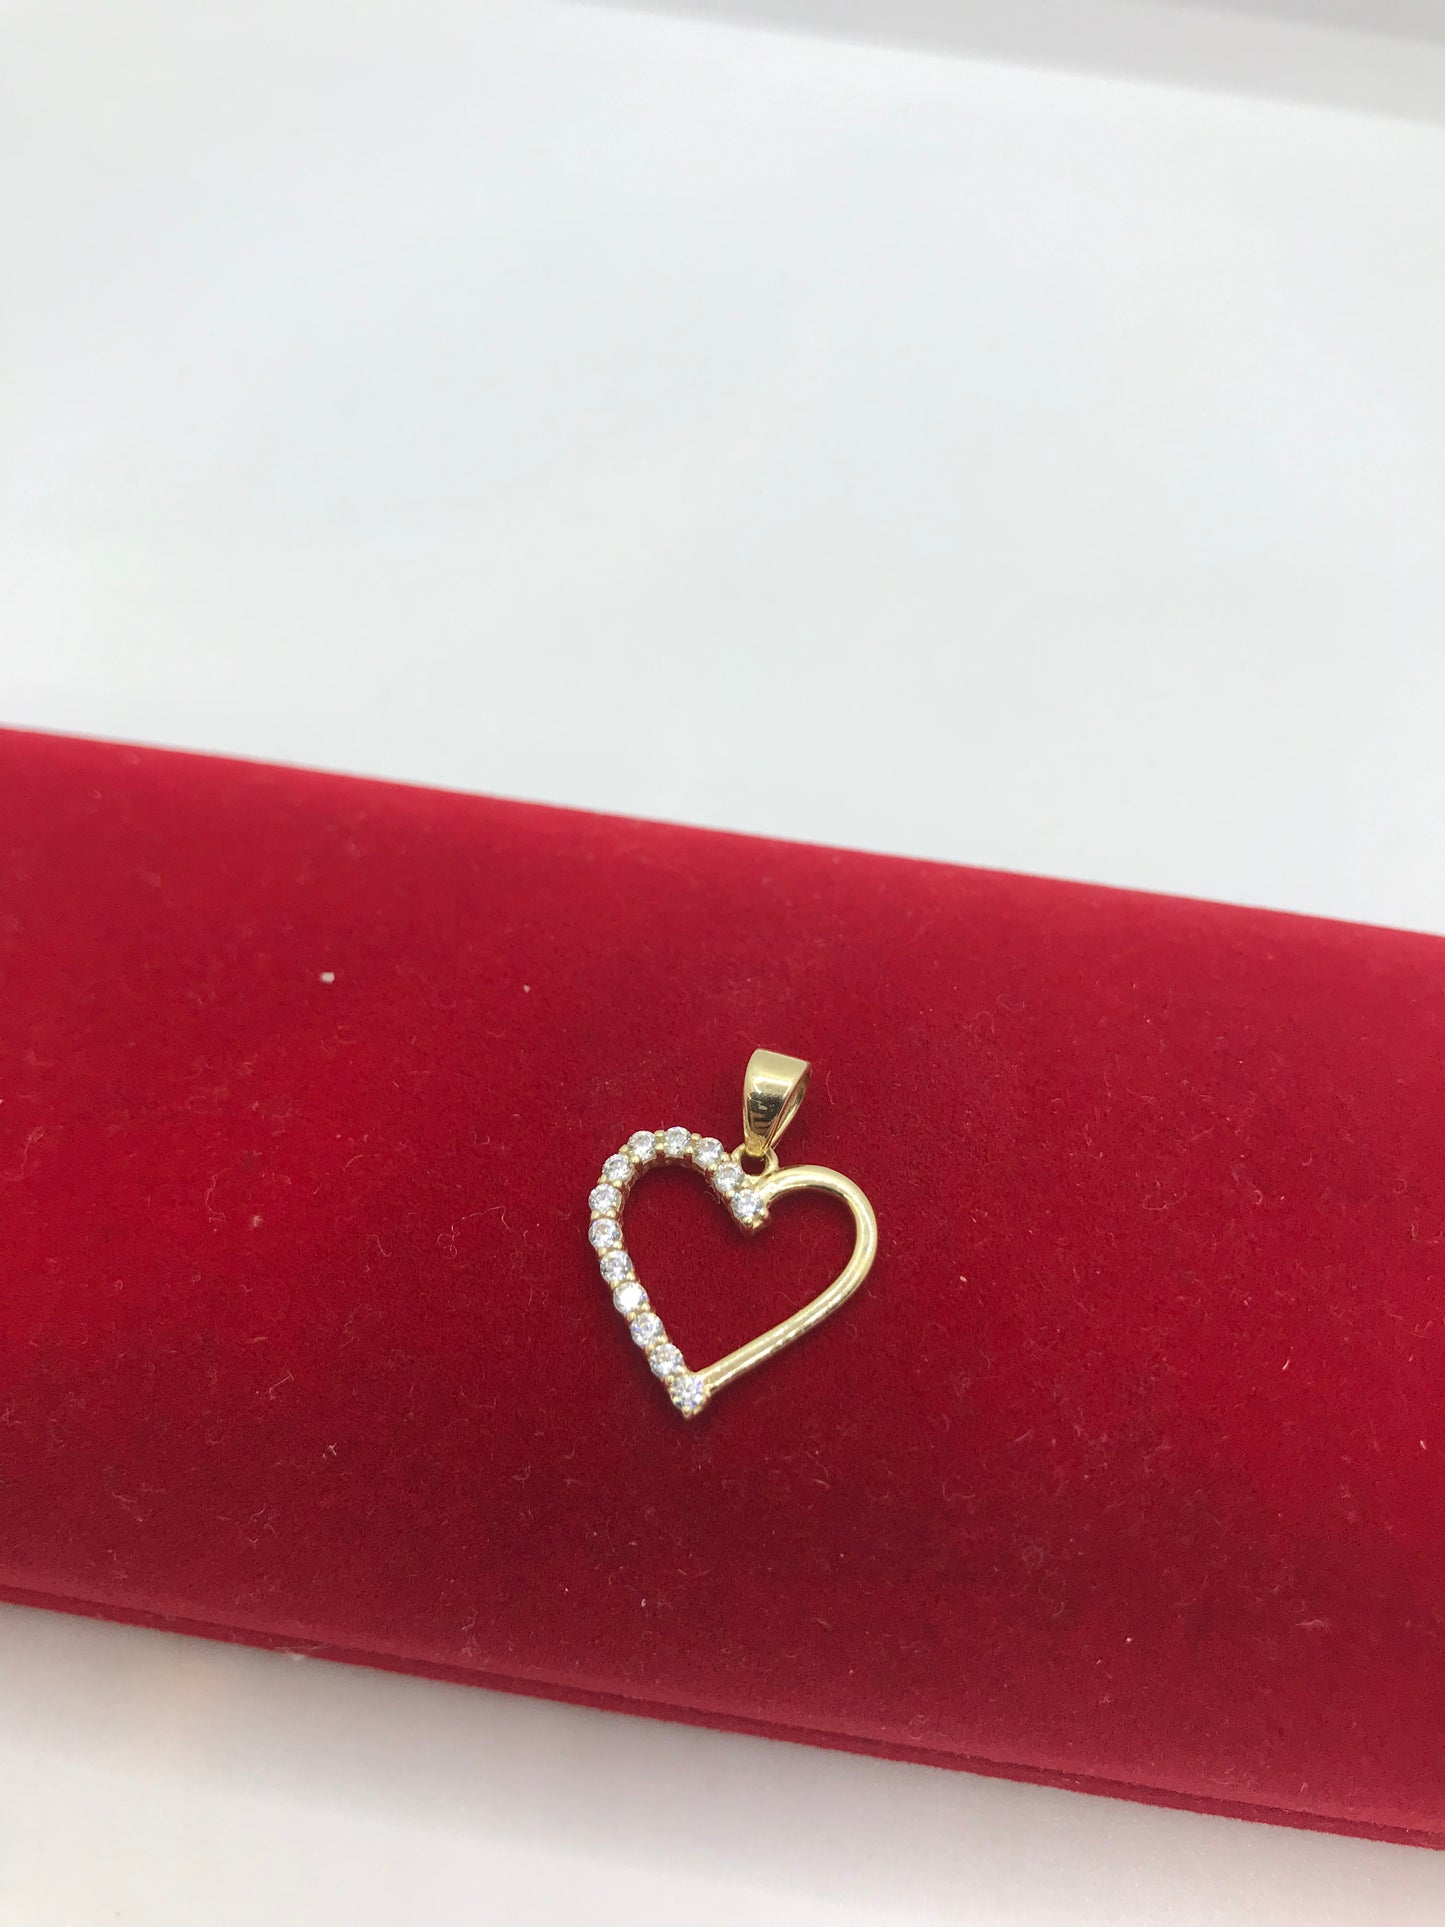 10k gold heart pendant